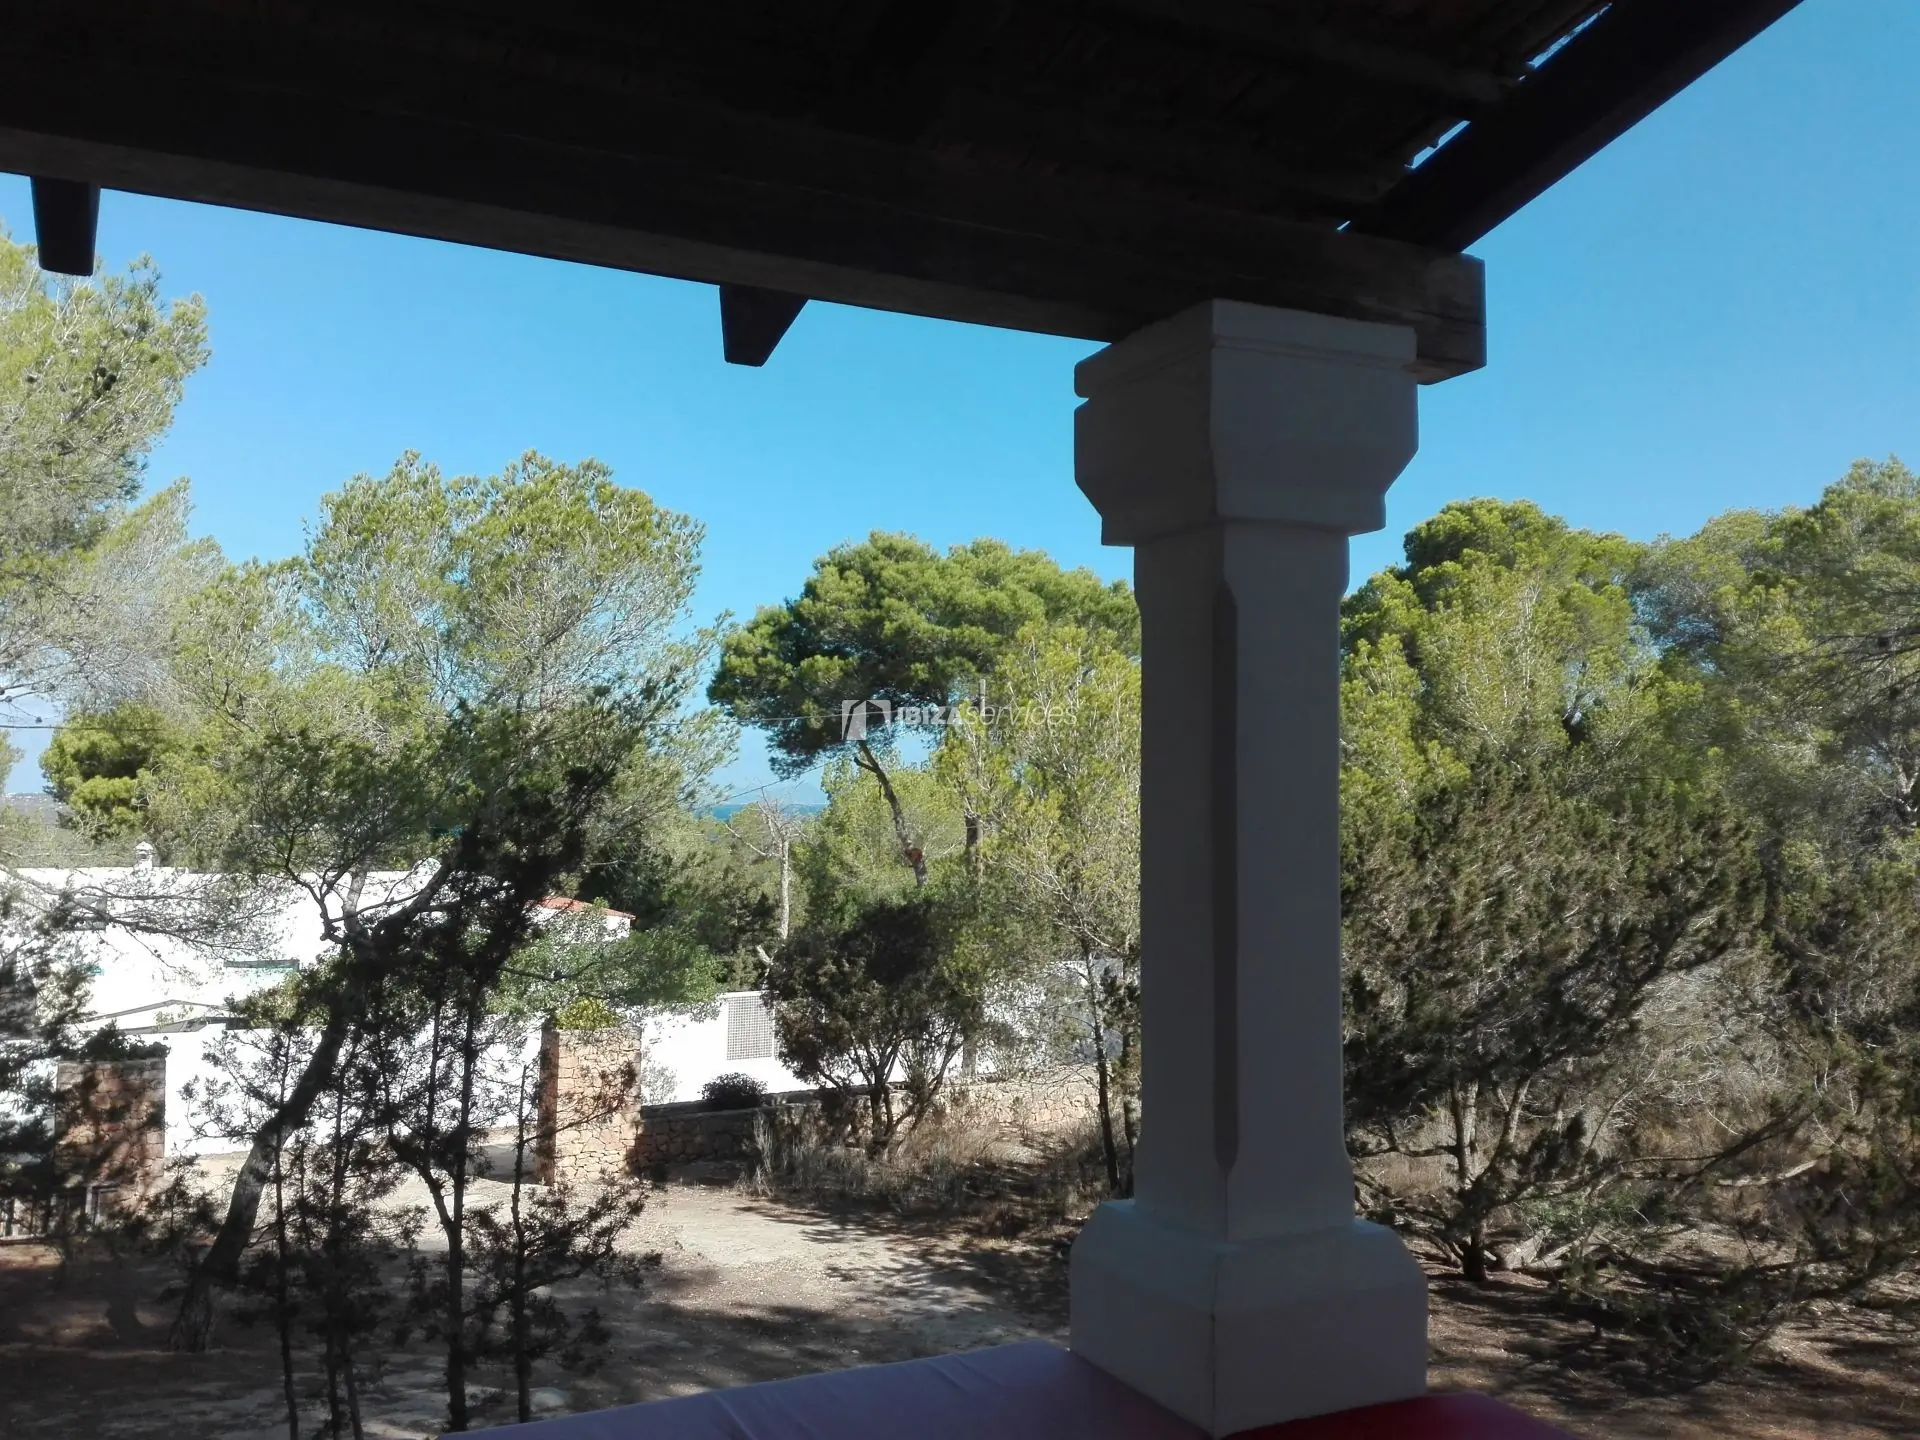 Alquiler villa en Formentera para tus vacaciones